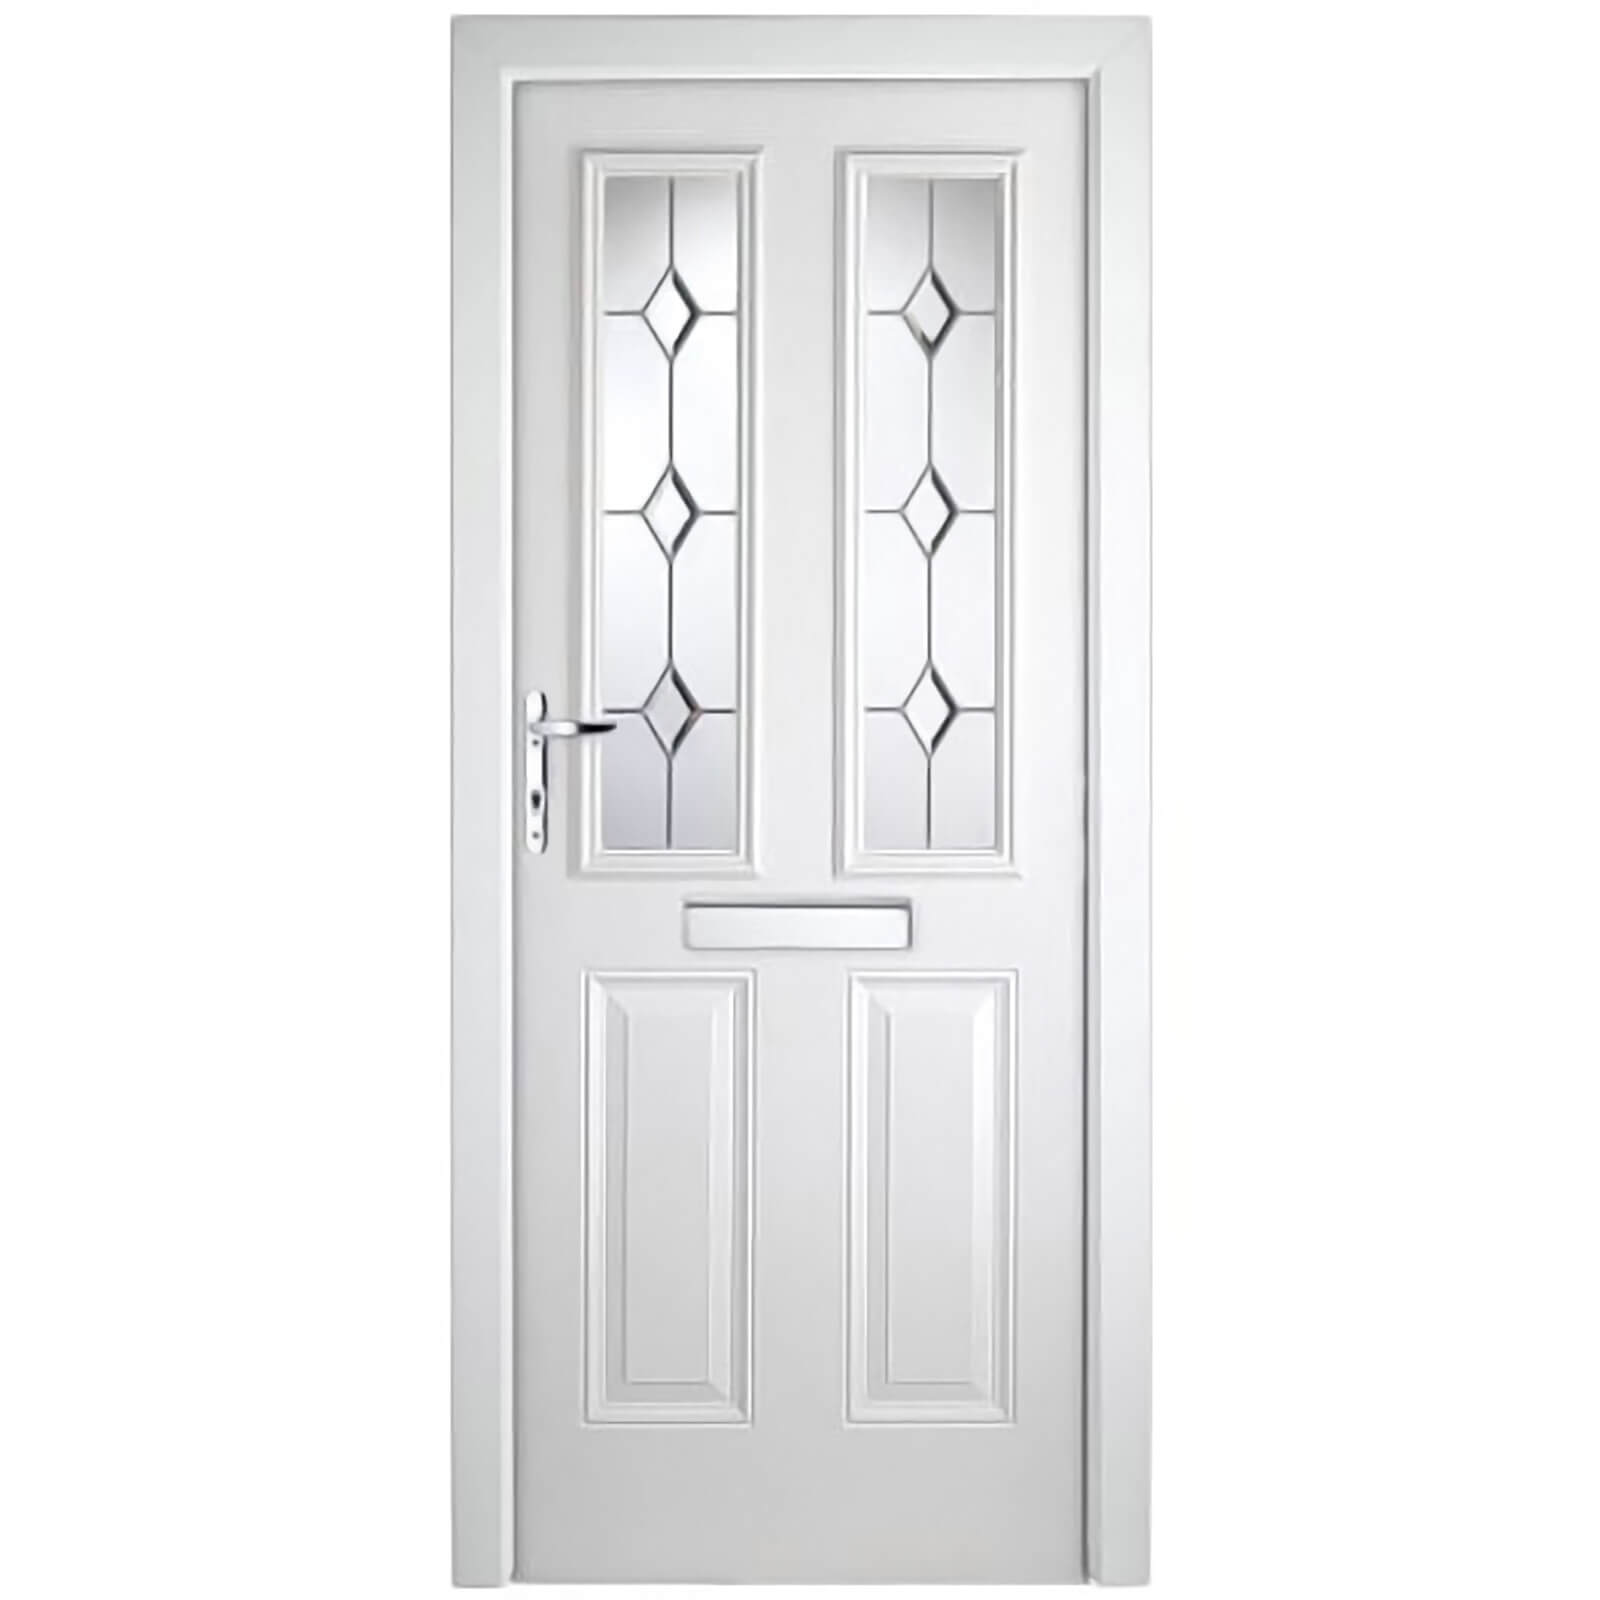 London 2 Narrow Lite Composite Door Set - White Right Hand Hung Composite Door - 920mm Wide 2085mm High